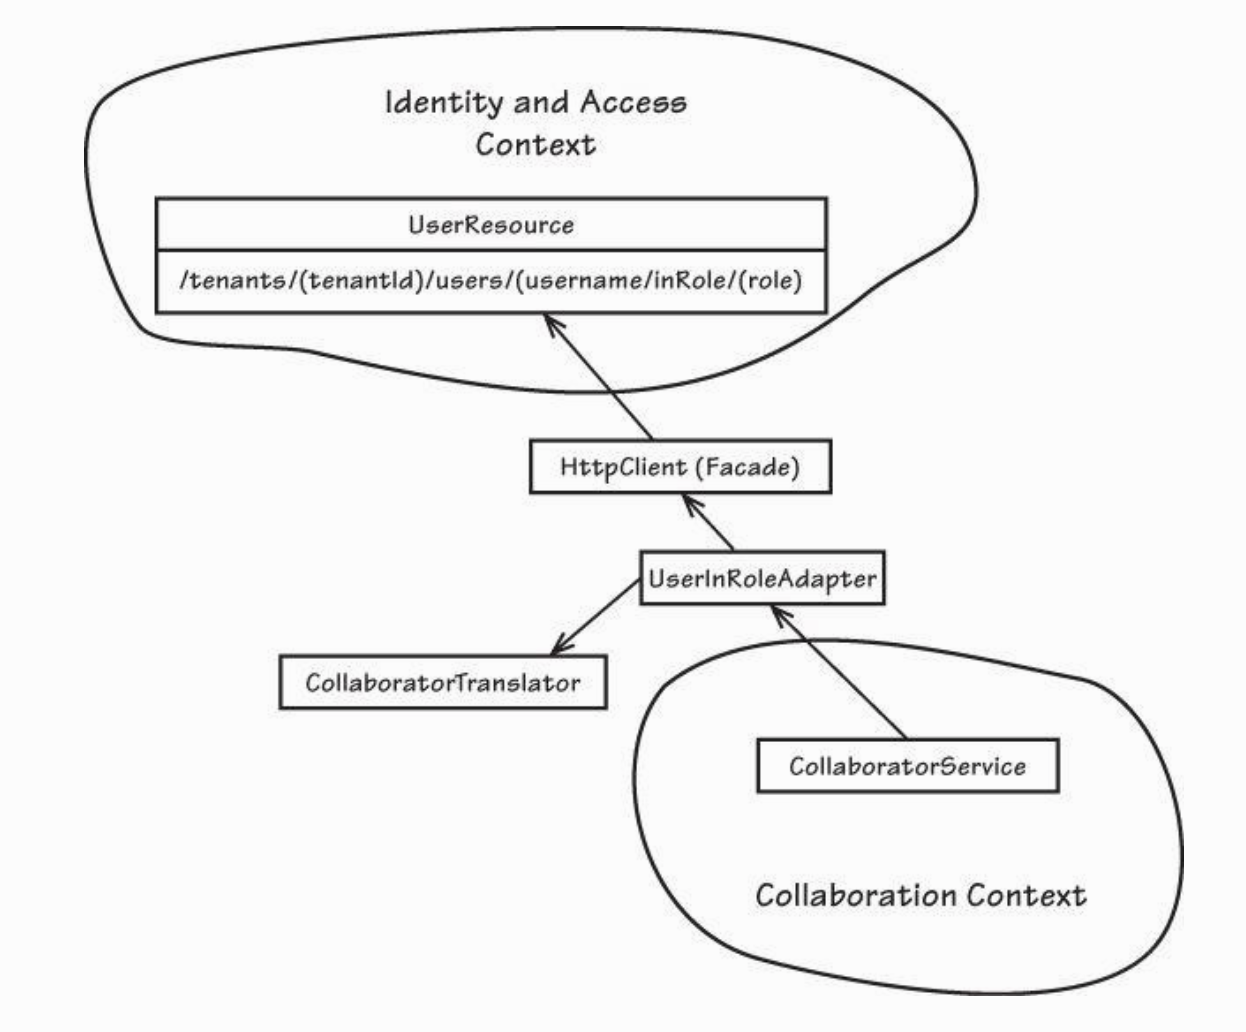 ID와 액세스 컨텍스트와 협업 컨텍스트의 부패 방지 계층 사이의 통합을 위해 사용된 오픈 호스트 서비스